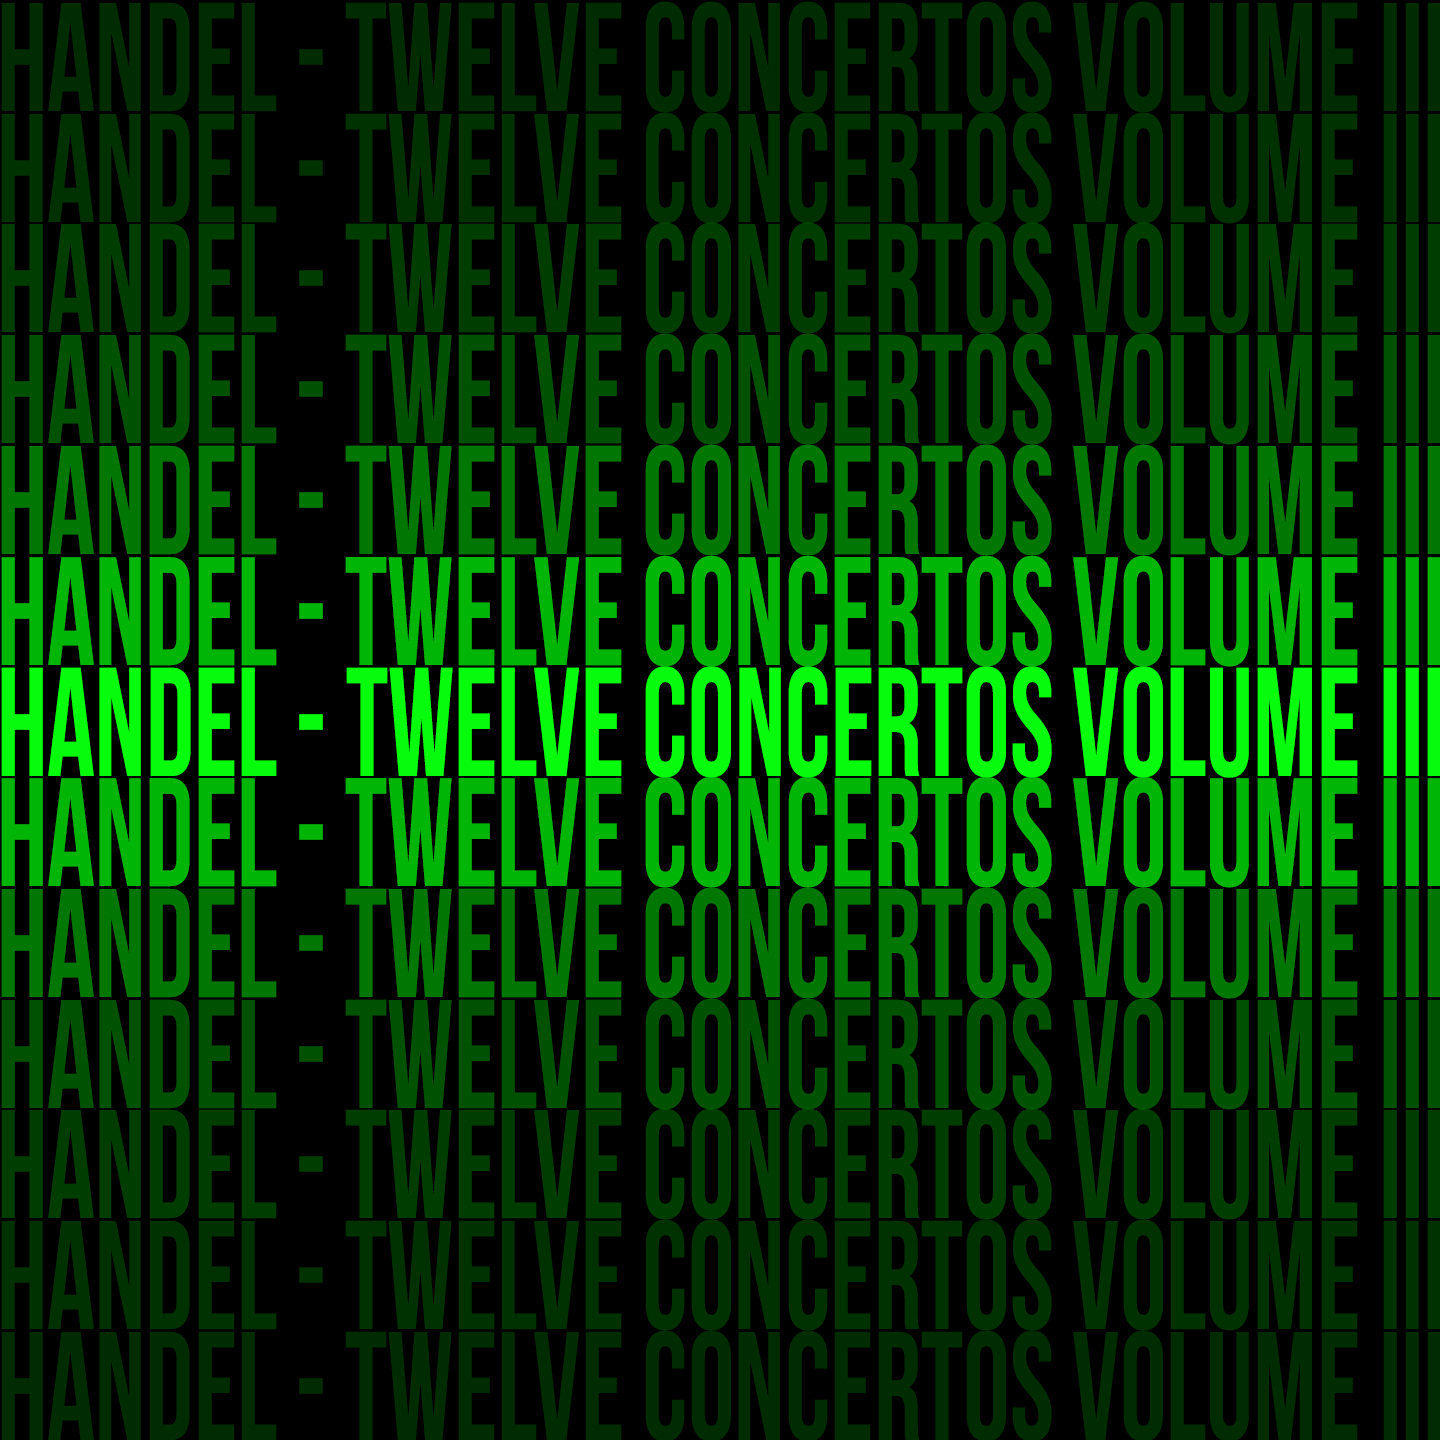 Handel - Twelve Concertos Volume III